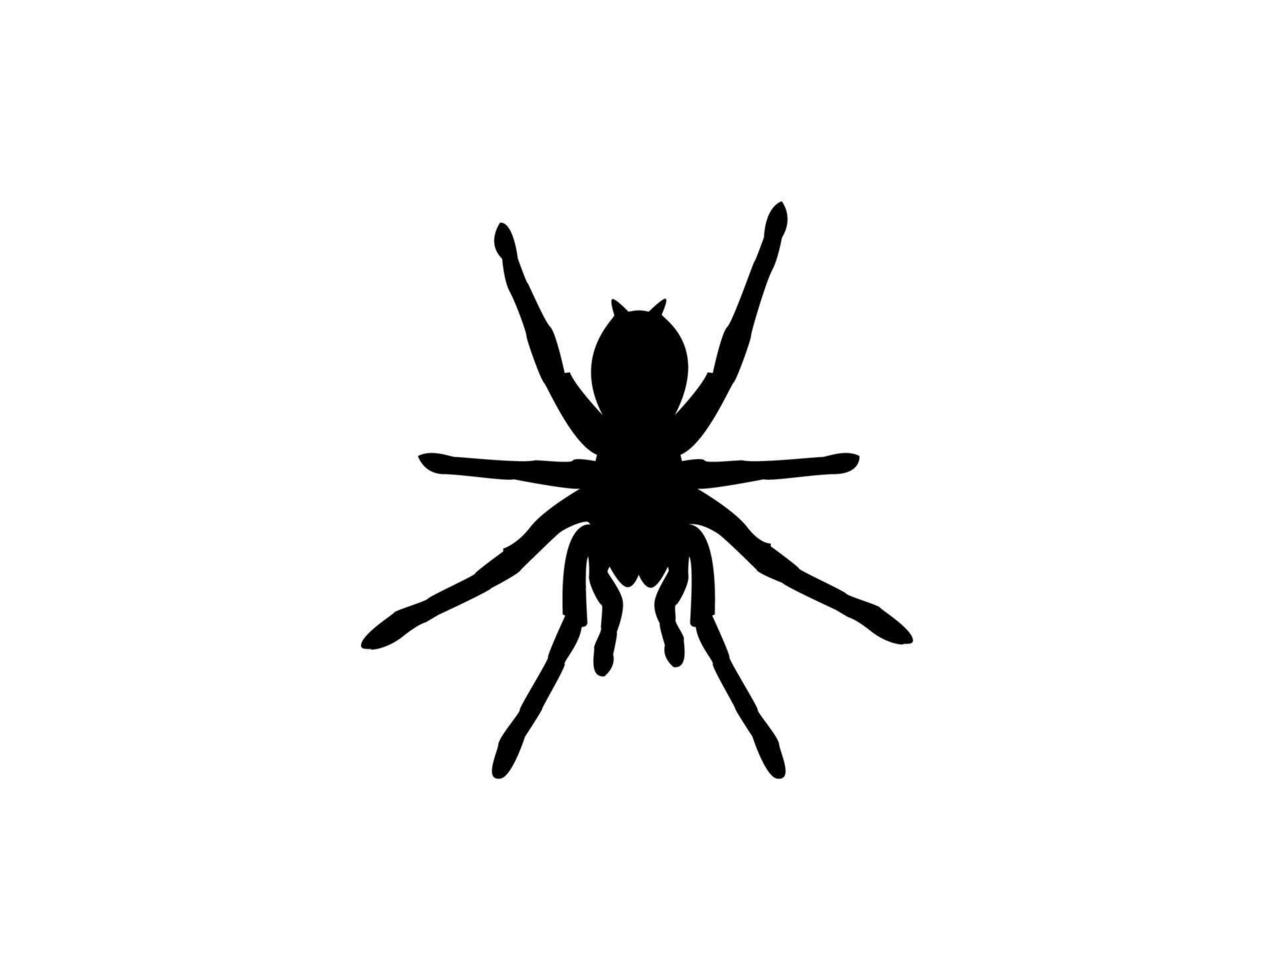 sagoma di un ragno tarantola su sfondo bianco. illustrazione di disegno vettoriale di clipart animali.